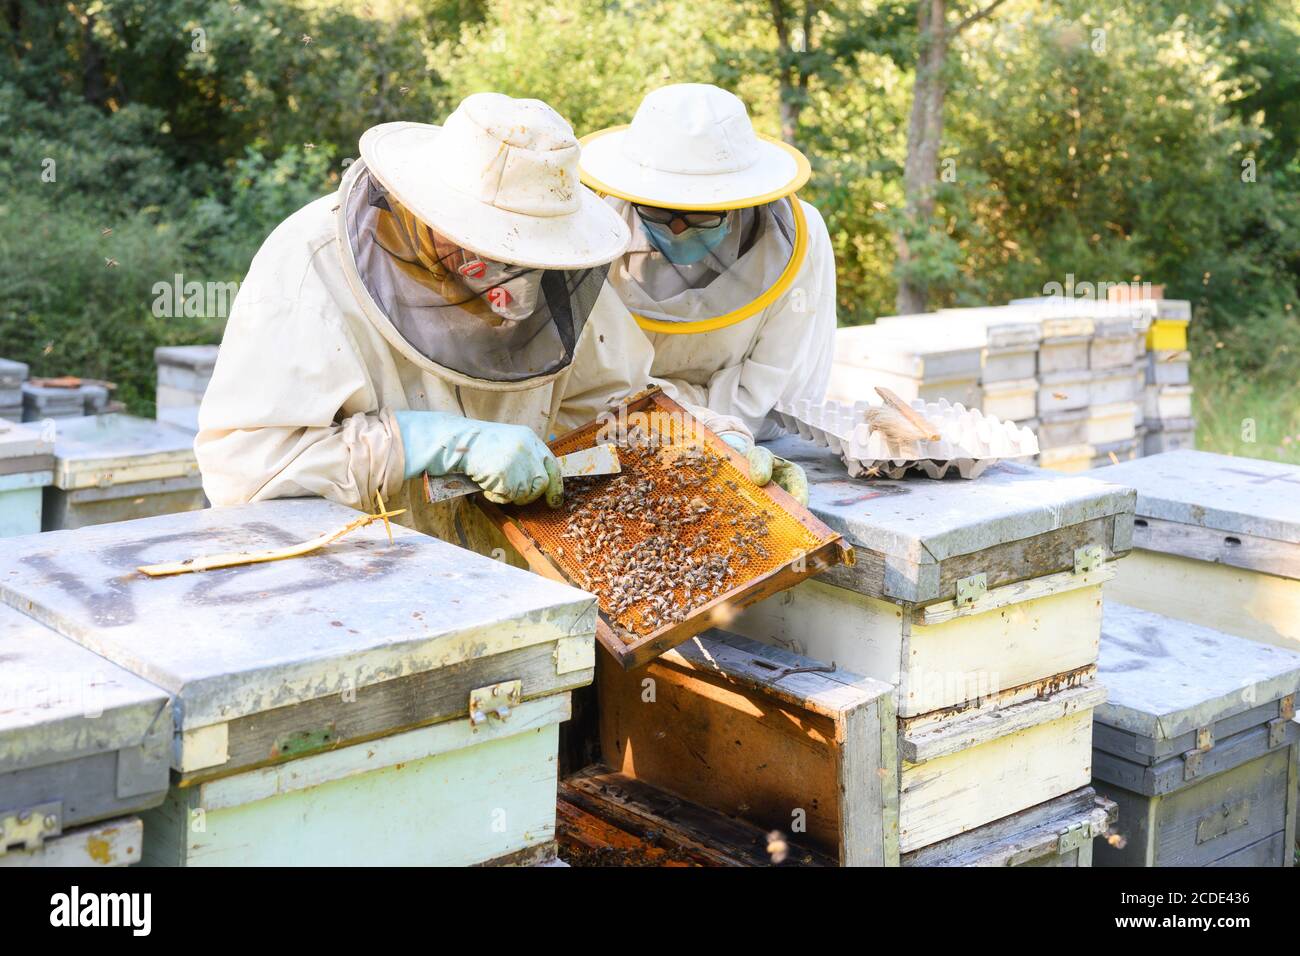 Apiculteur sur l'apiaire. Apiculteur travaille avec des abeilles et des ruches sur l'apilier. Image de haute qualité Banque D'Images